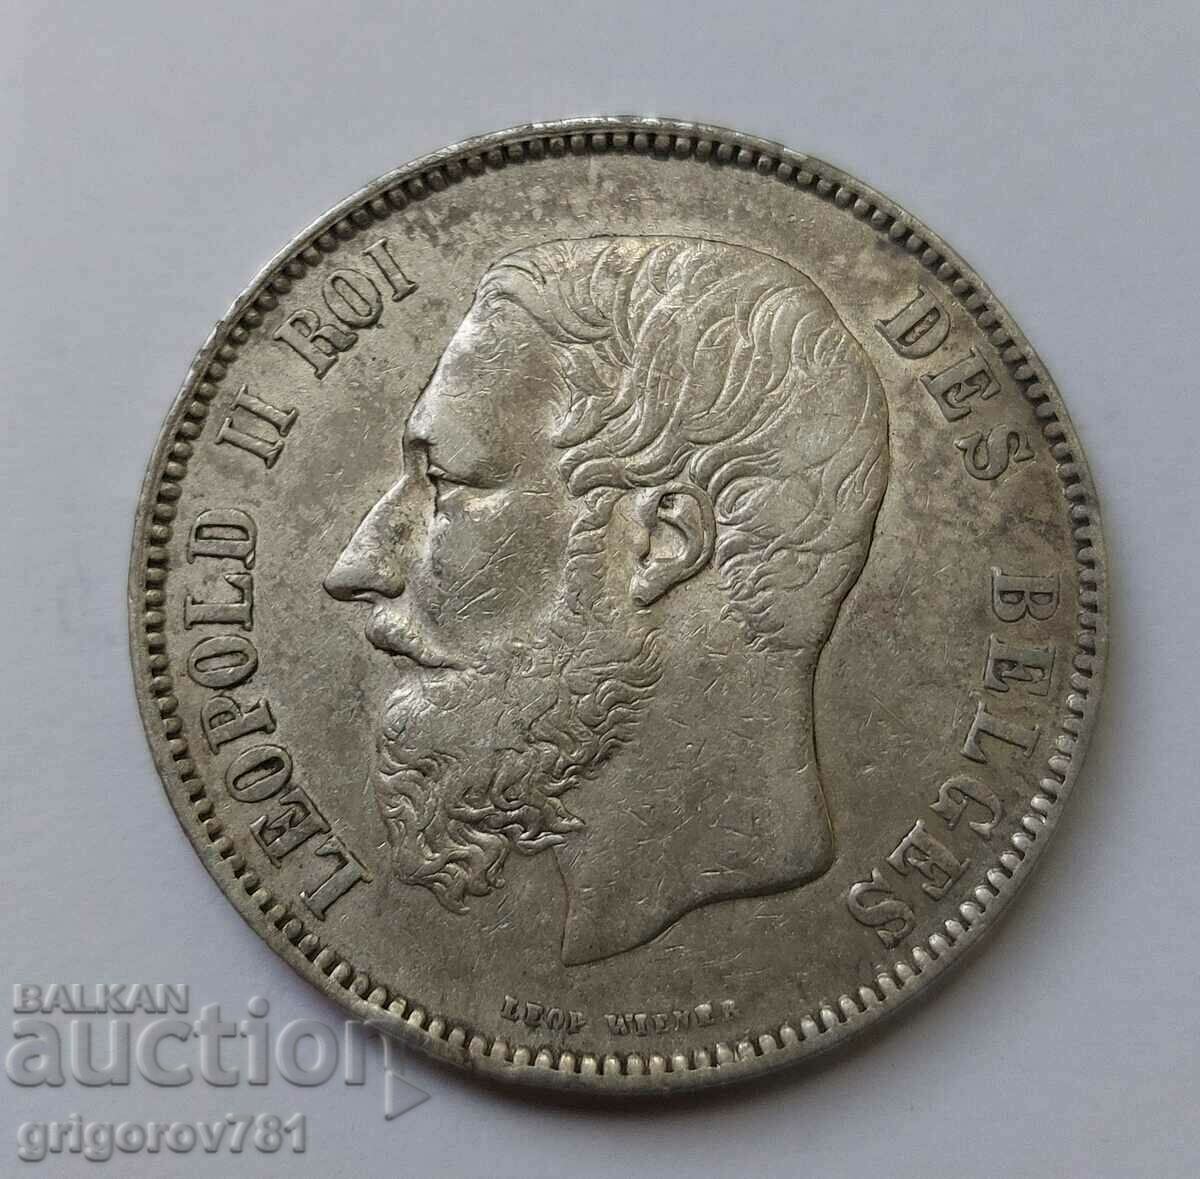 5 Francs Silver Belgium 1873 - Silver Coin #104